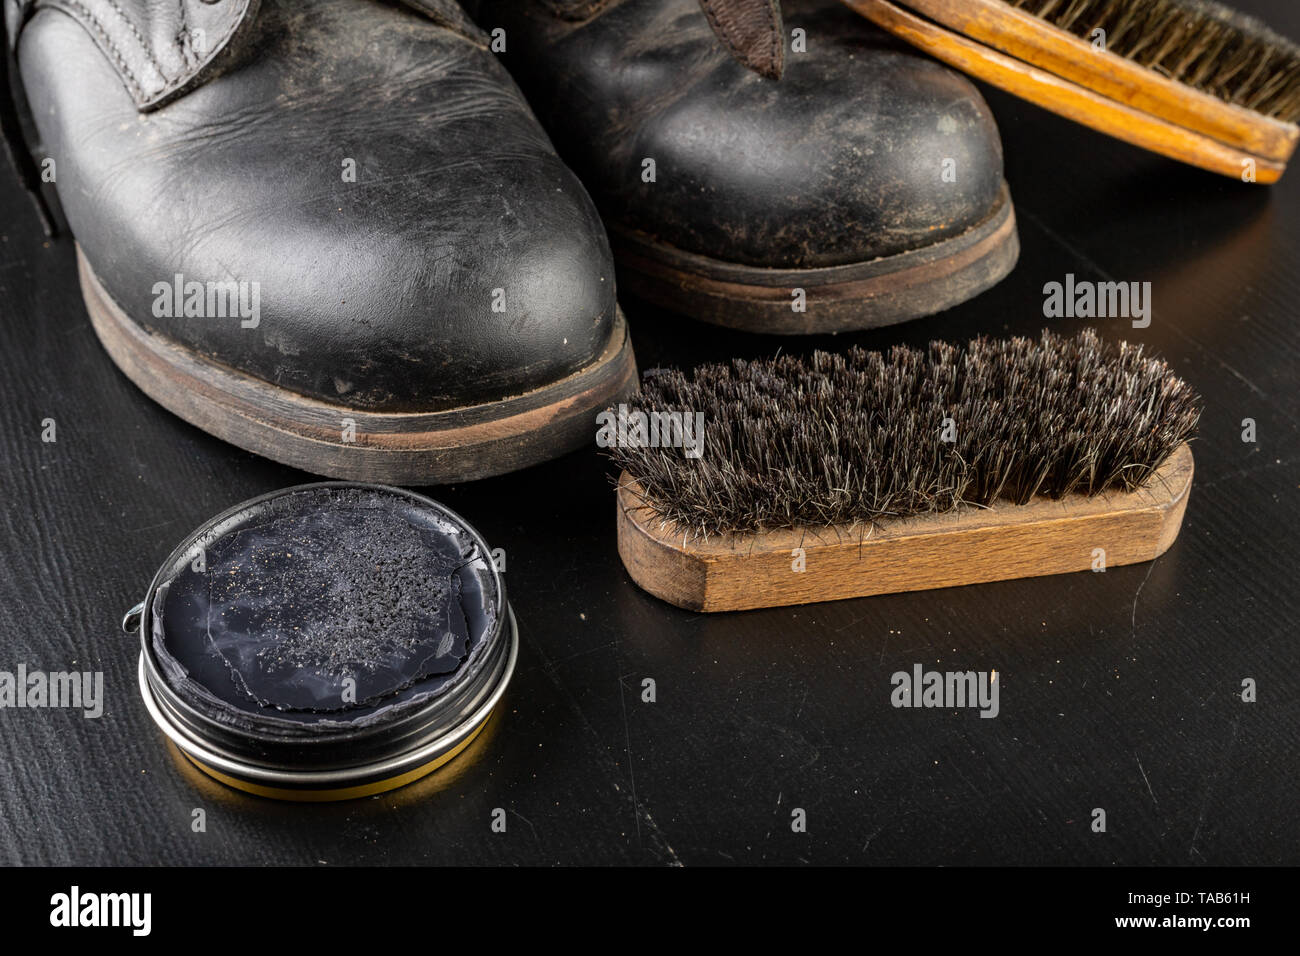 shoe polish and brush